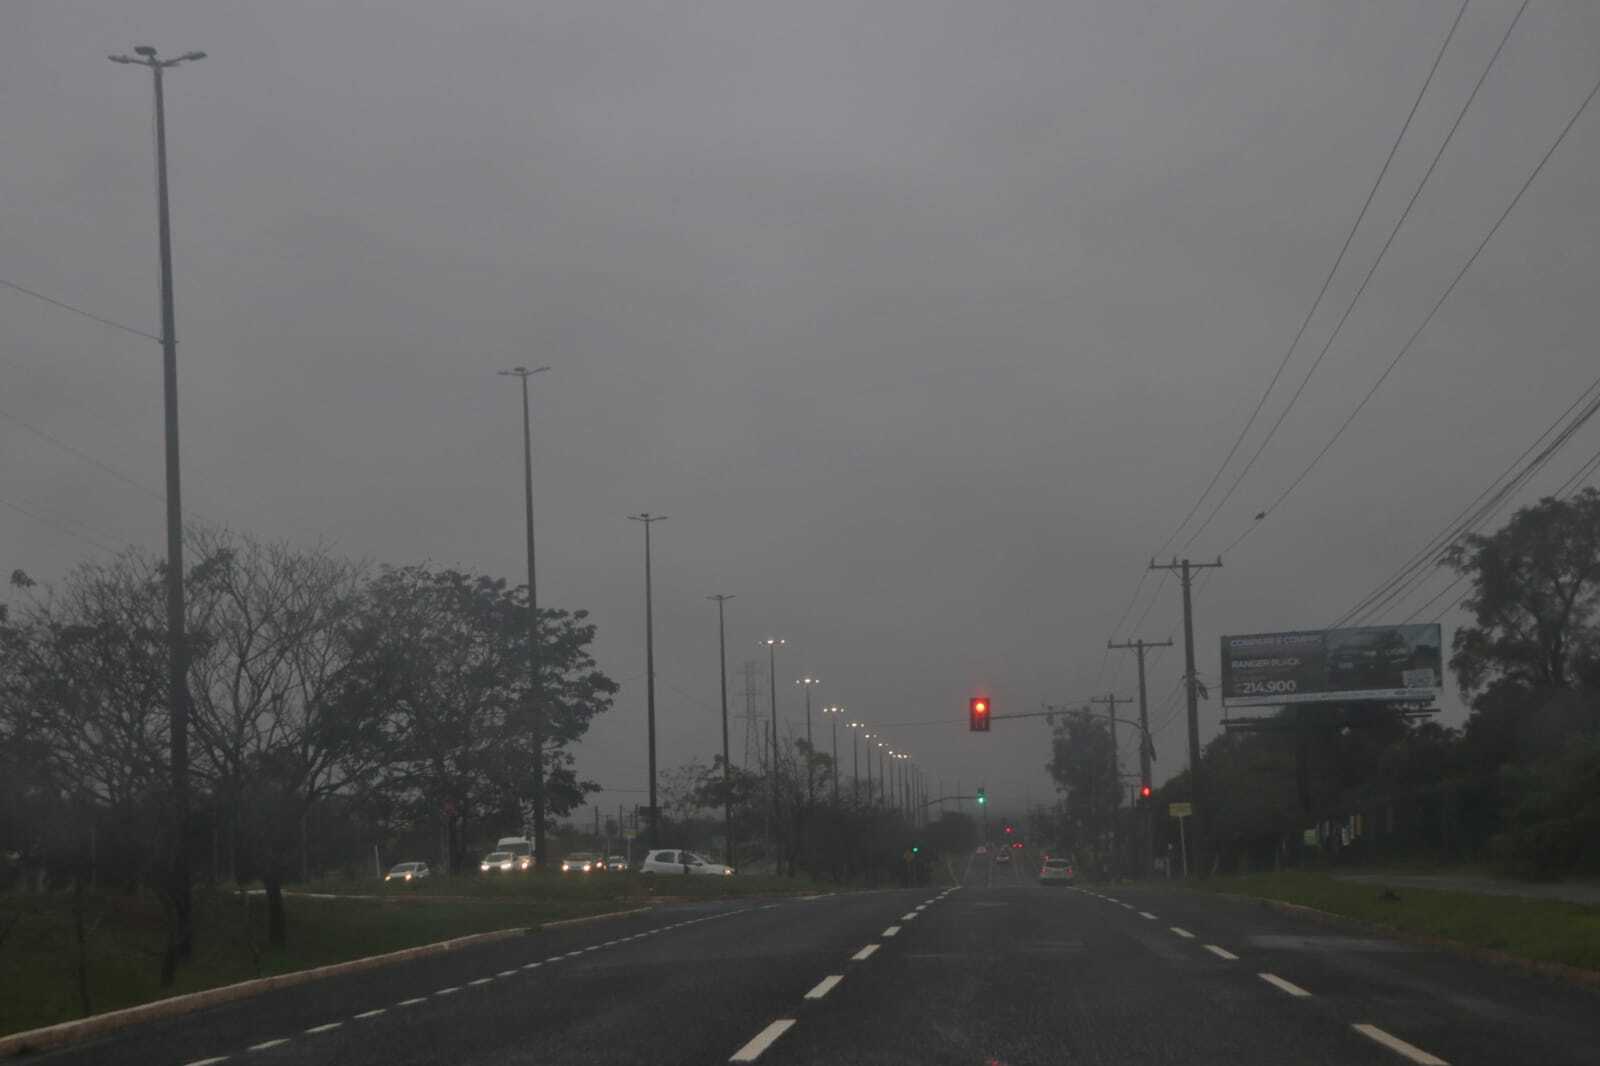 Quarta-feira amanhece fria, garoando e instituto alerta para chuva forte -  Meio Ambiente - Campo Grande News